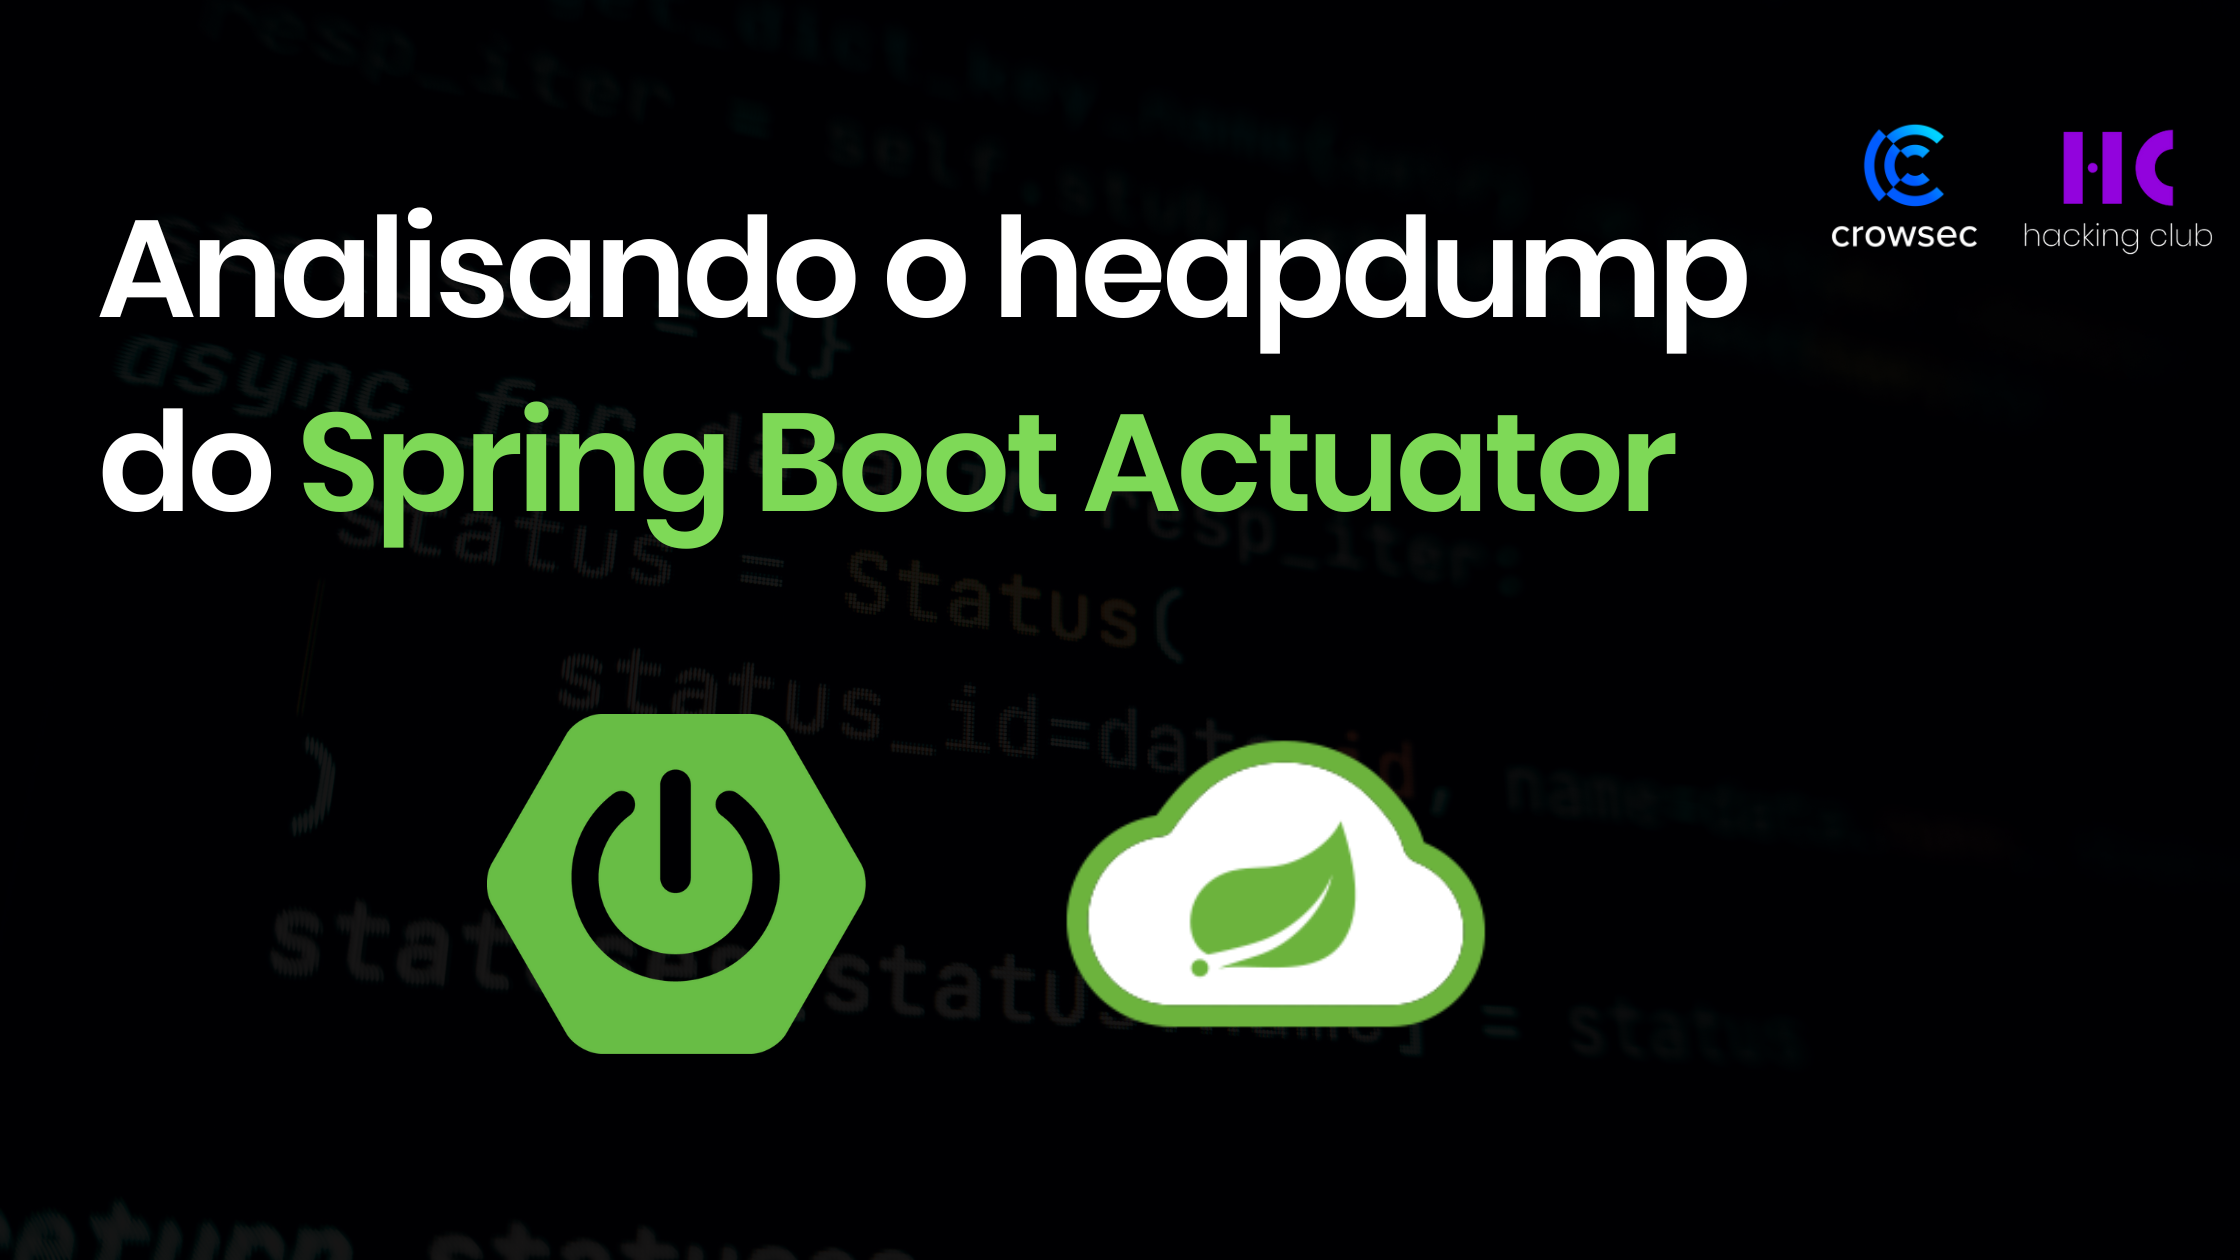 Analisando o heapdump do Spring Boot Actuator